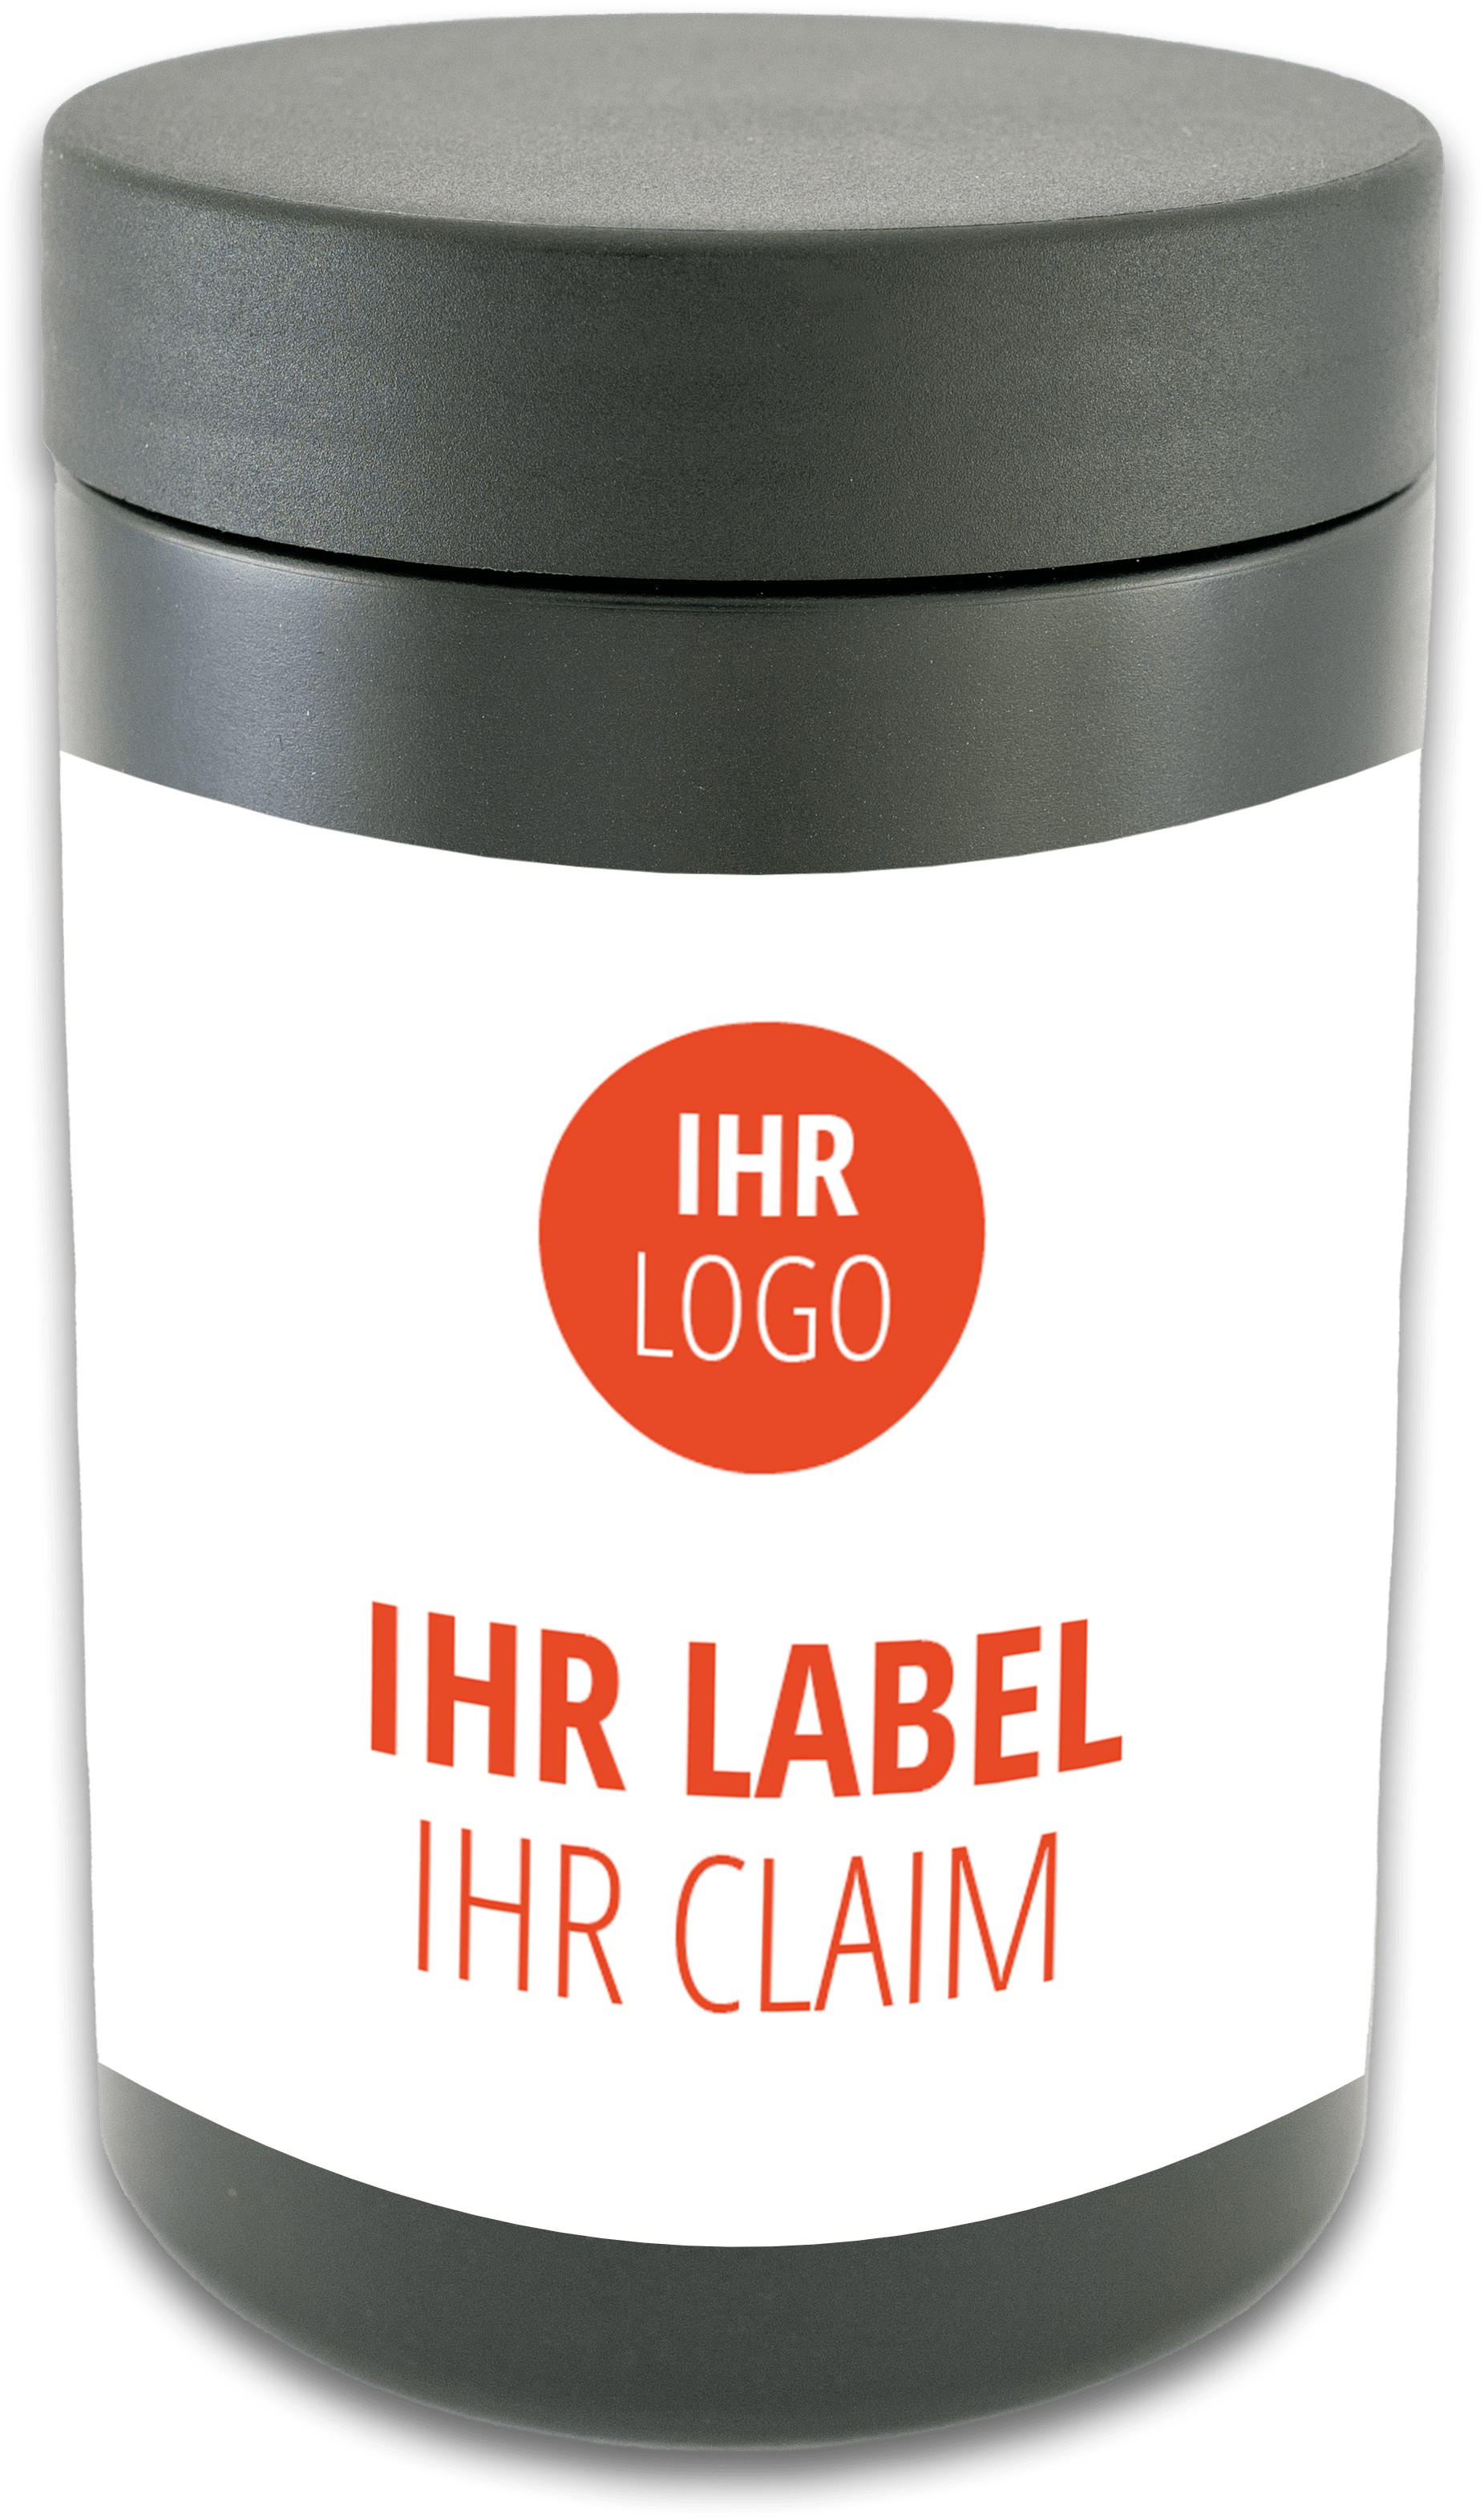 Produktmuster "Ihr Logo, Ihr Label, Ihr Claim"